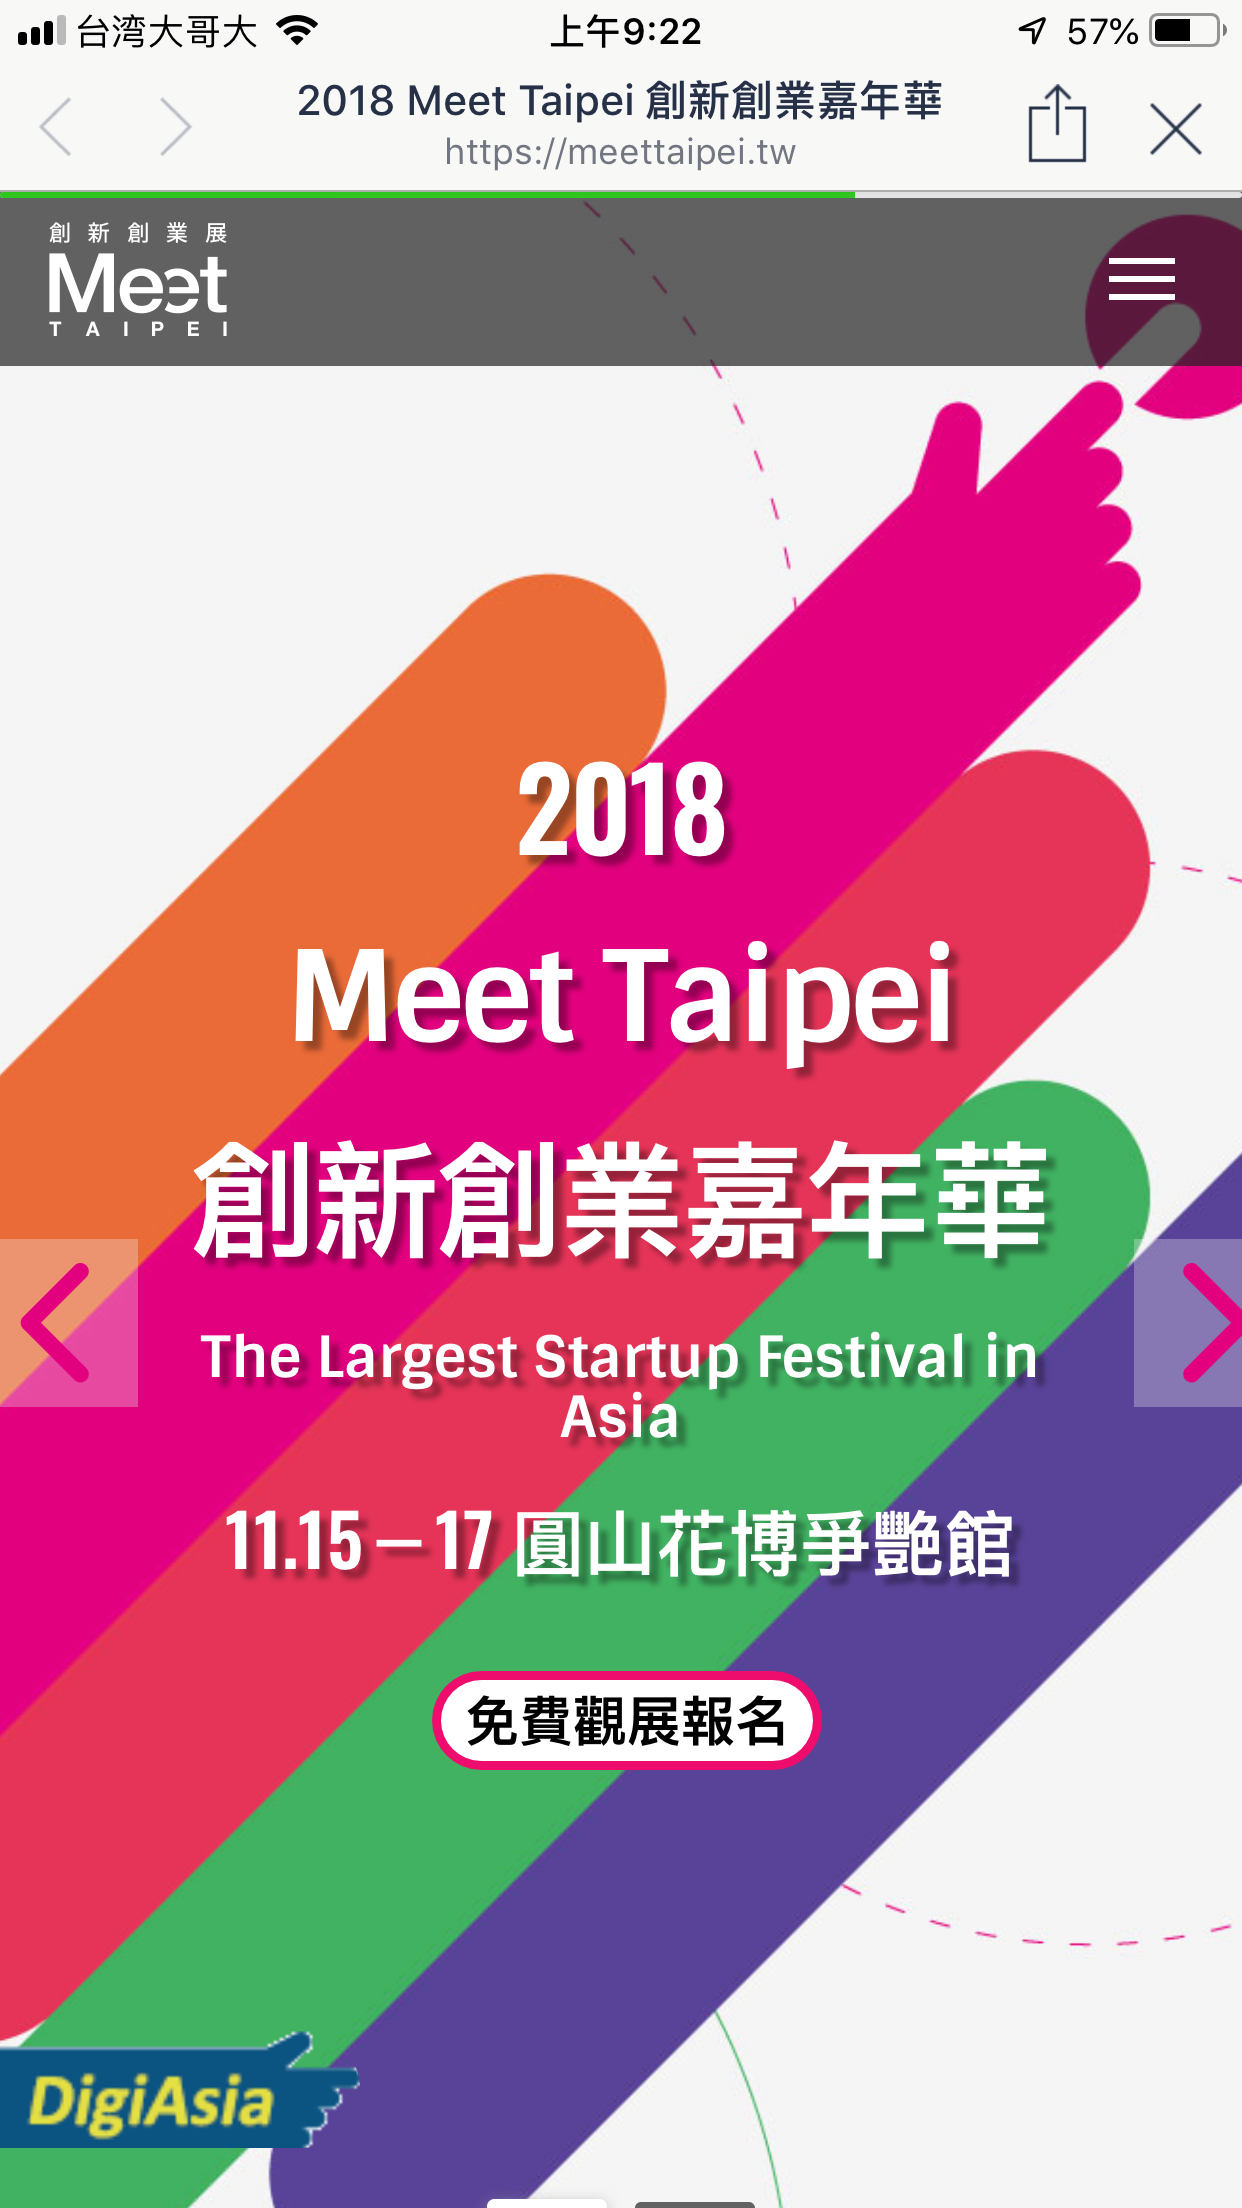 20181115-1117 MeetTaipei Jabra 展售店